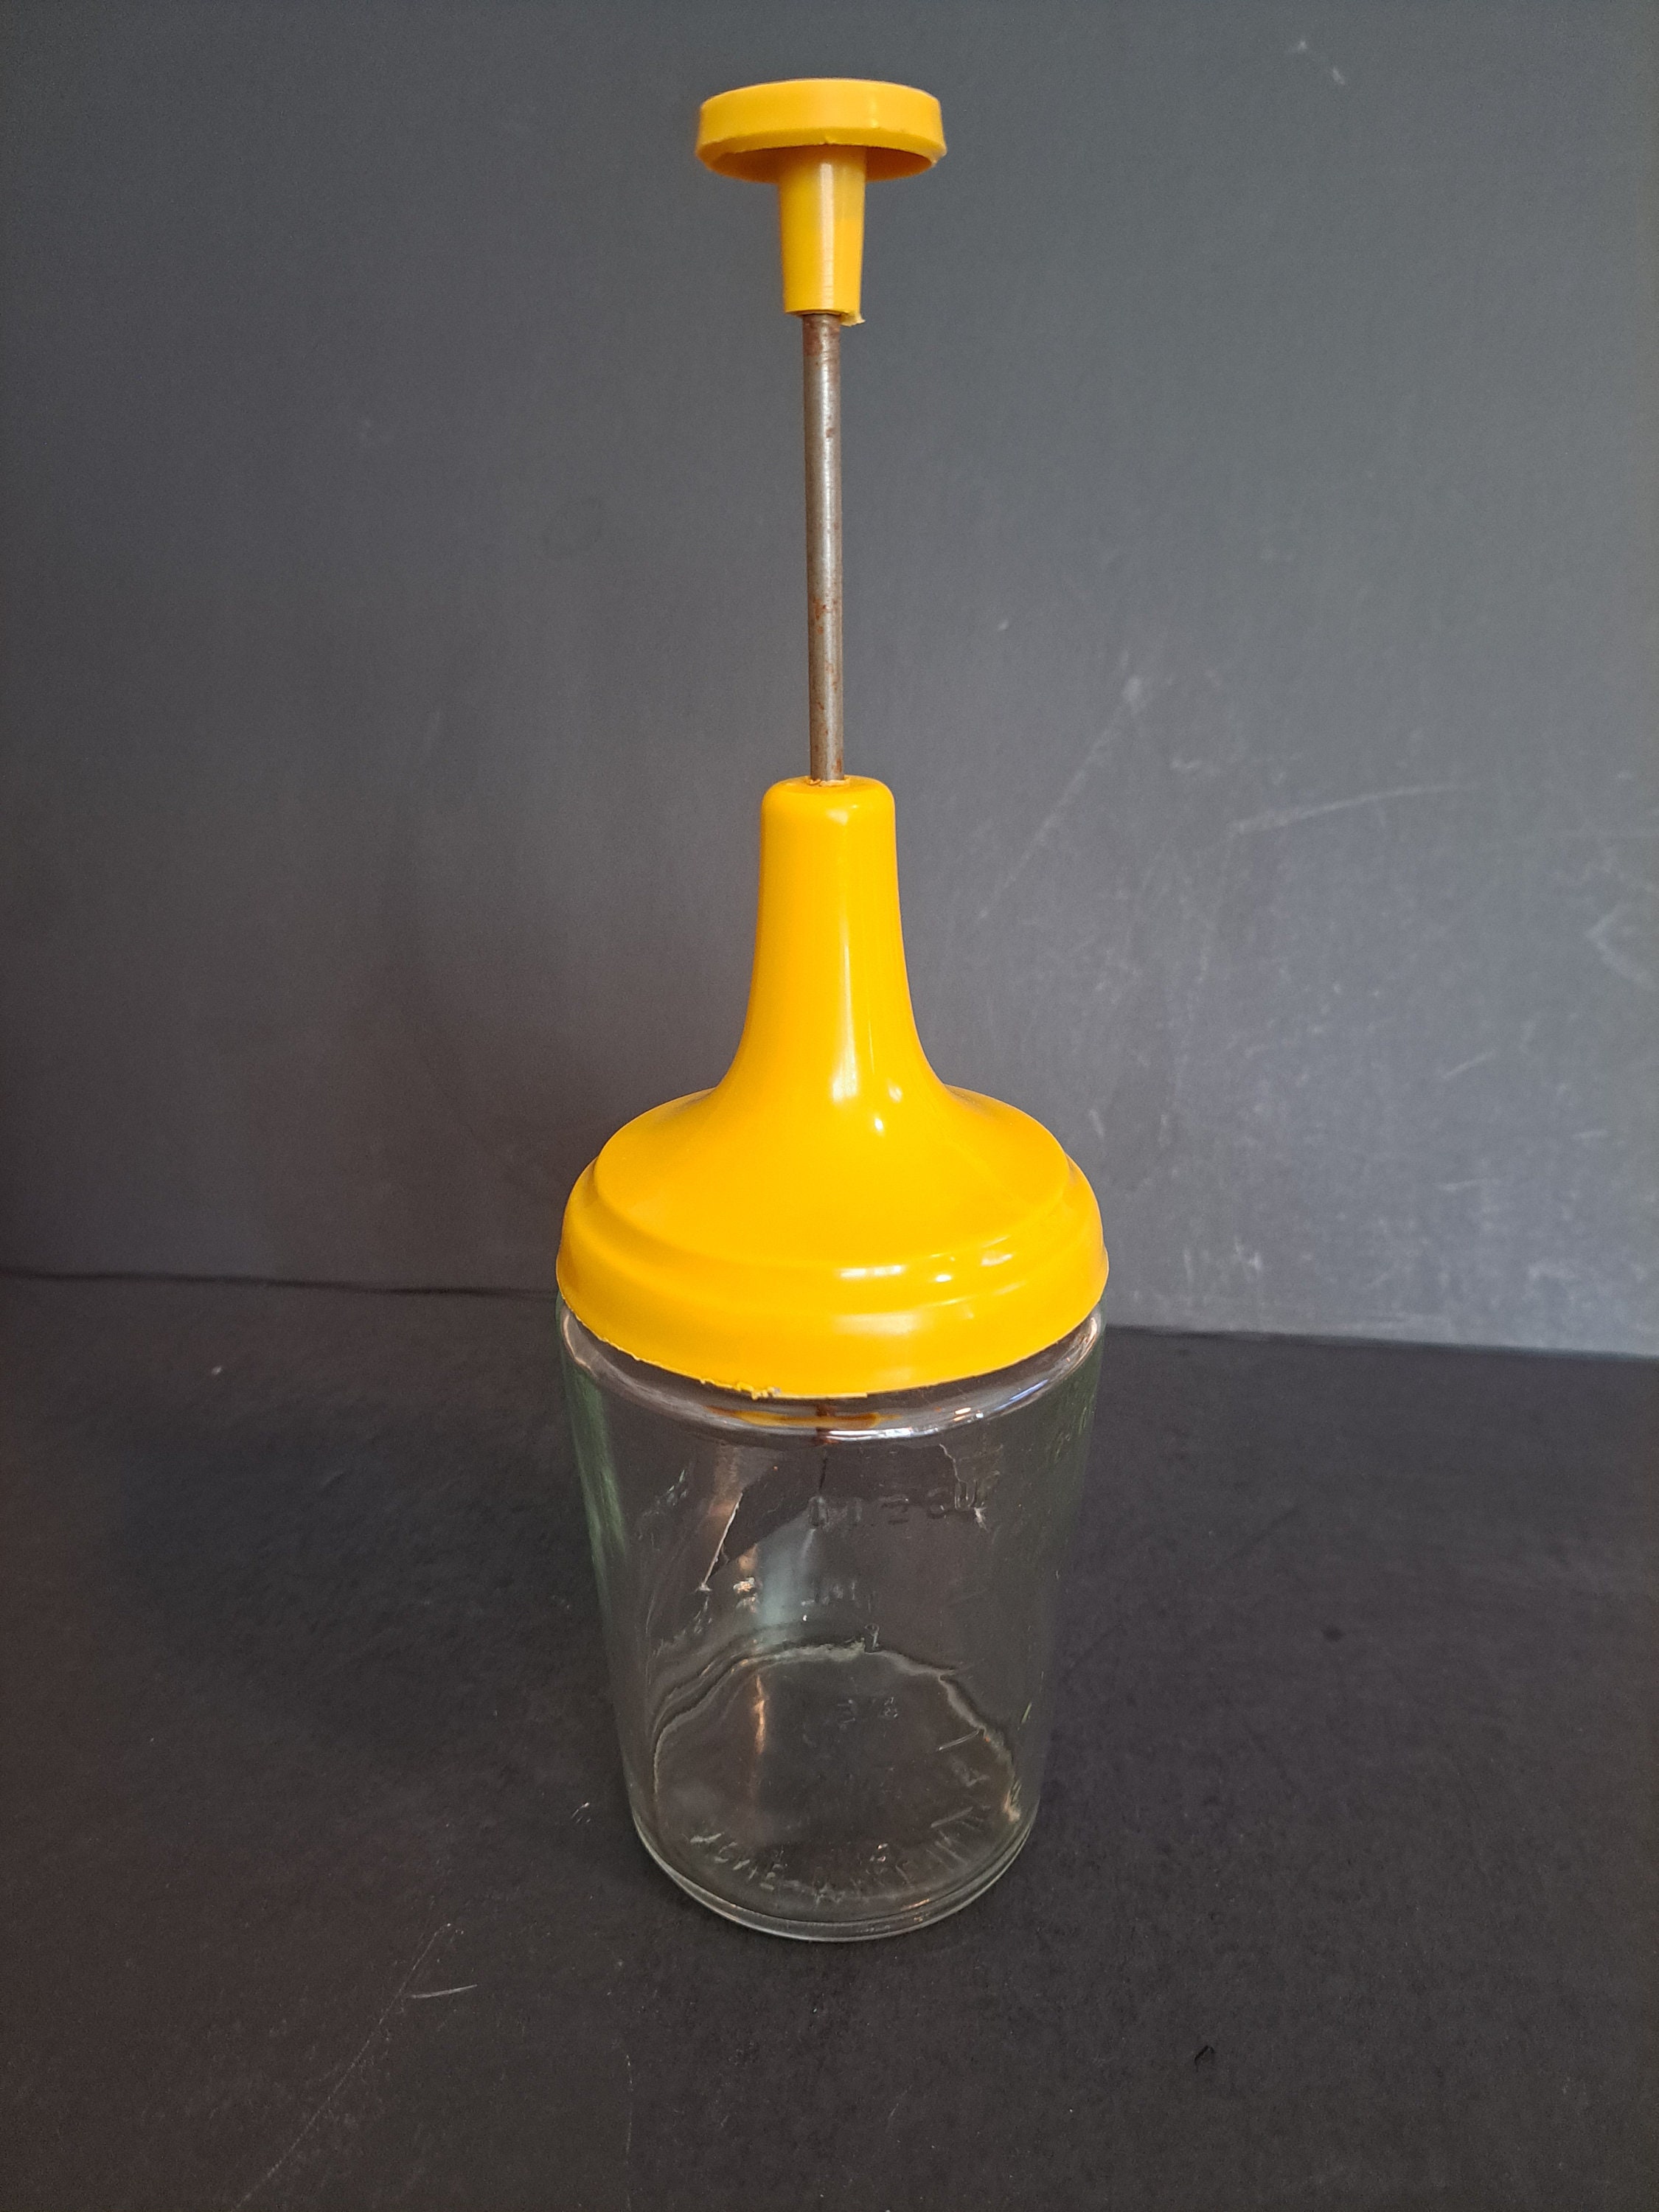 Vintage Nut Chopper Grinder Manual Hand Crank Glass Jar Plastic Measuring  Lid